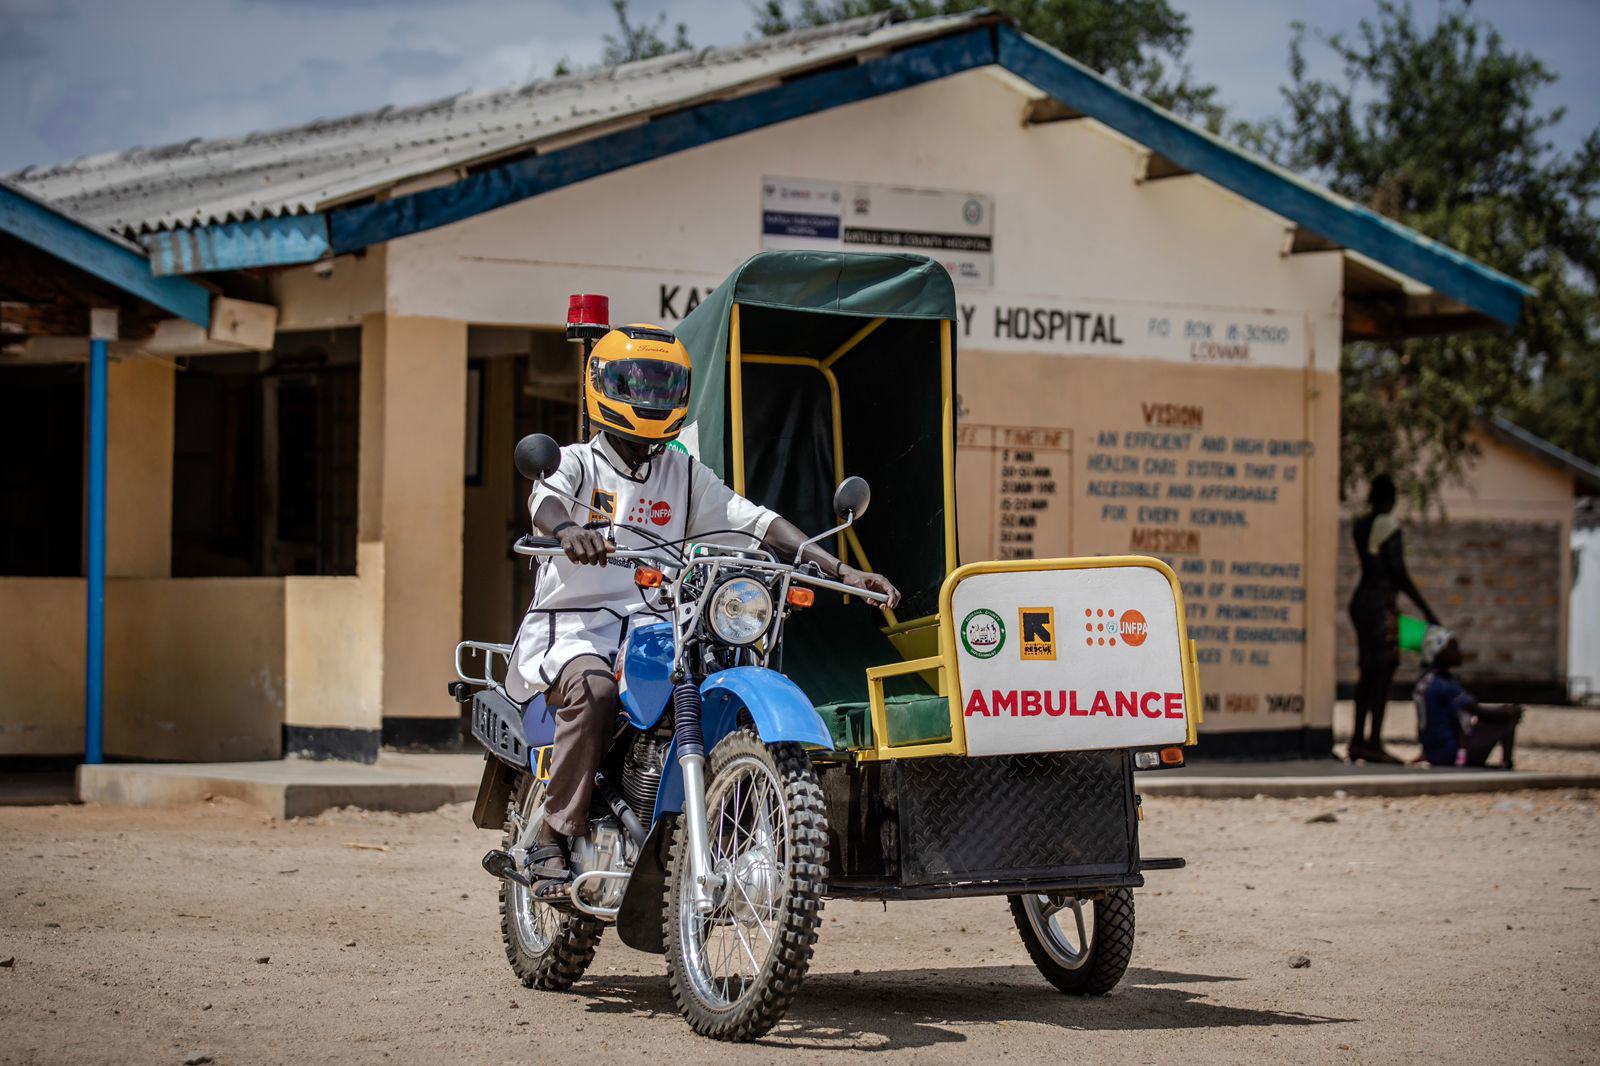 La sécheresse actuelle a rendu beaucoup plus difficile pour les femmes du comté de Turkana, au Kenya, l'accès aux services de santé essentiels - une situation dangereuse à laquelle l'ambulance à moto de l'UNFPA aide à remédier.